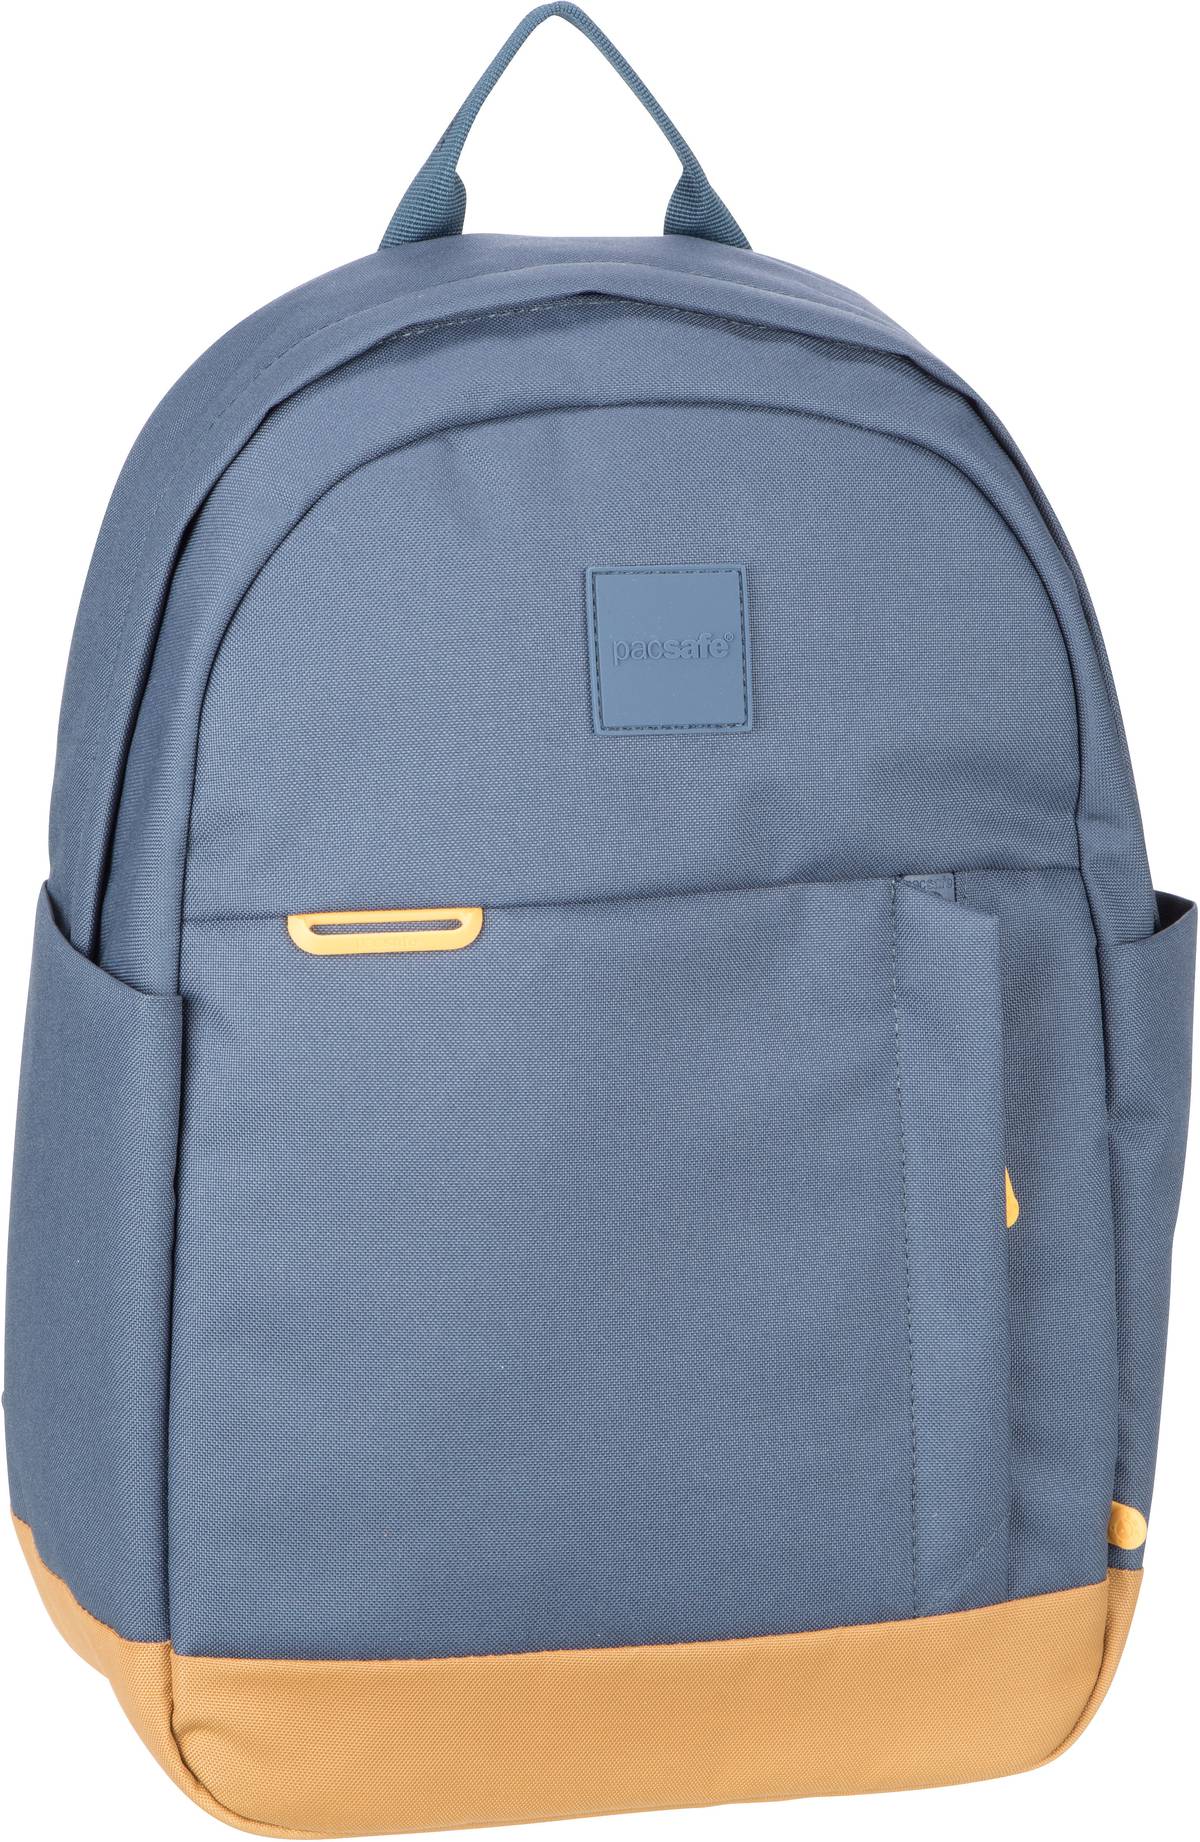 Pacsafe GO 15L Backpack  in Blau (15 Liter), Rucksack / Backpack